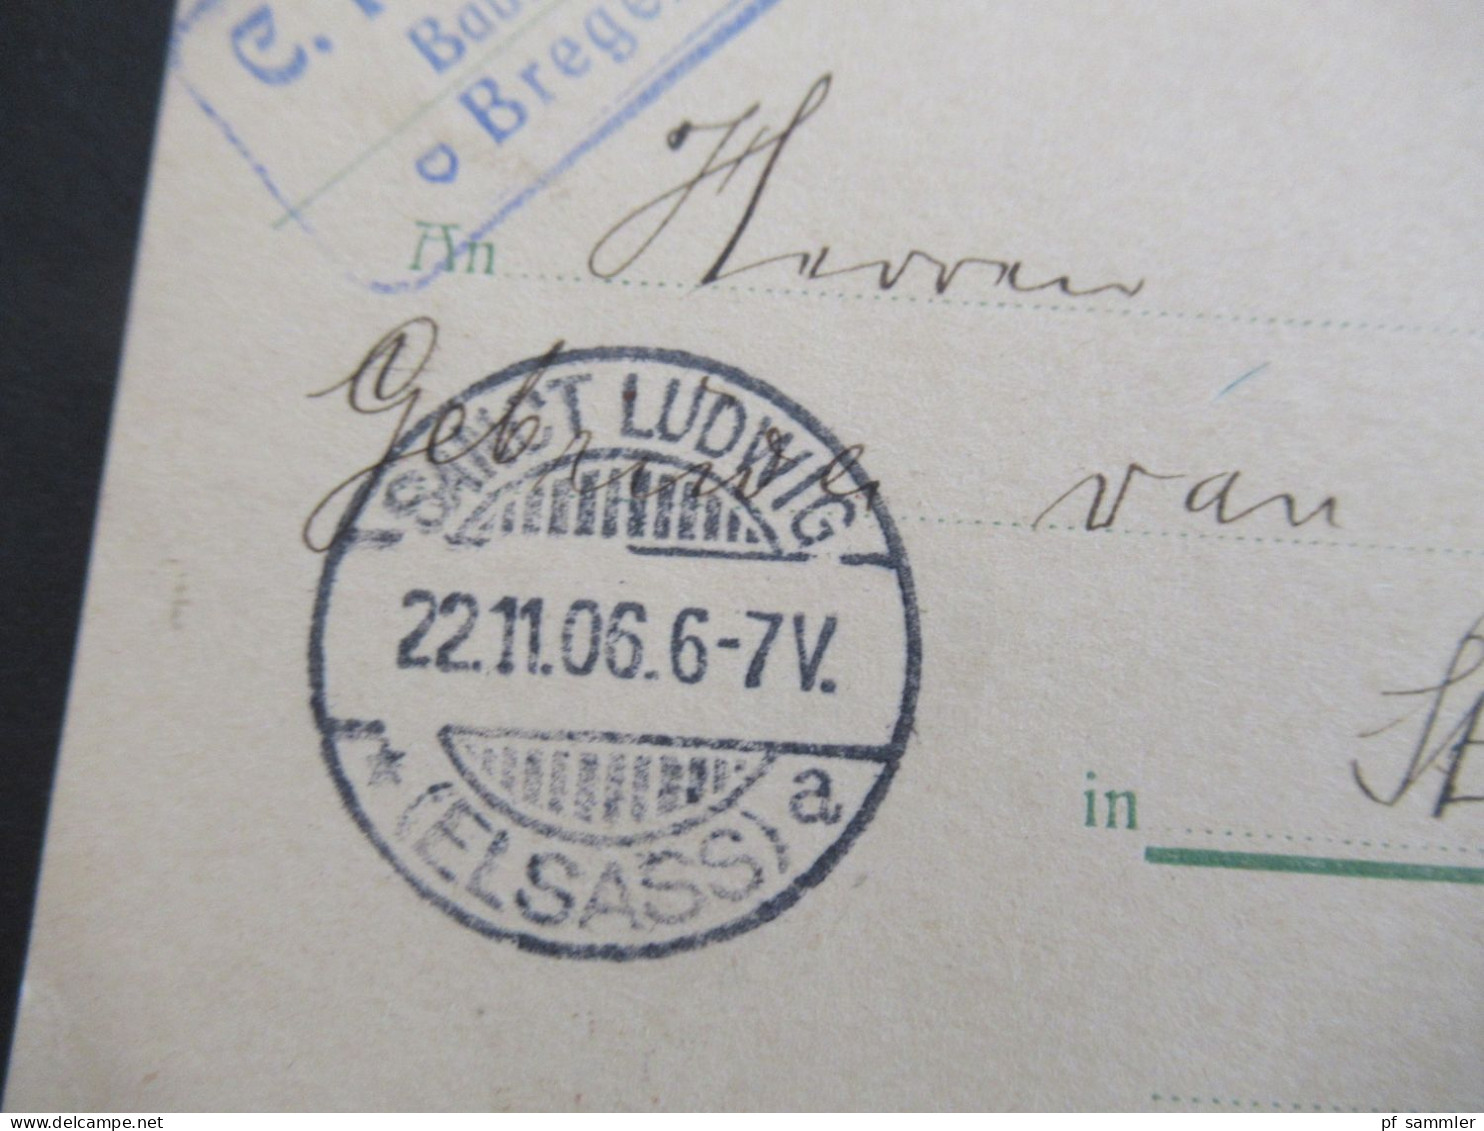 Österreich 1906 GA Auslandsverwendung Bregenz Und Ank. Stp. Sanct Ludwig Elsass Abs. C. Rhomberg Baumeister Bregenz - Postcards